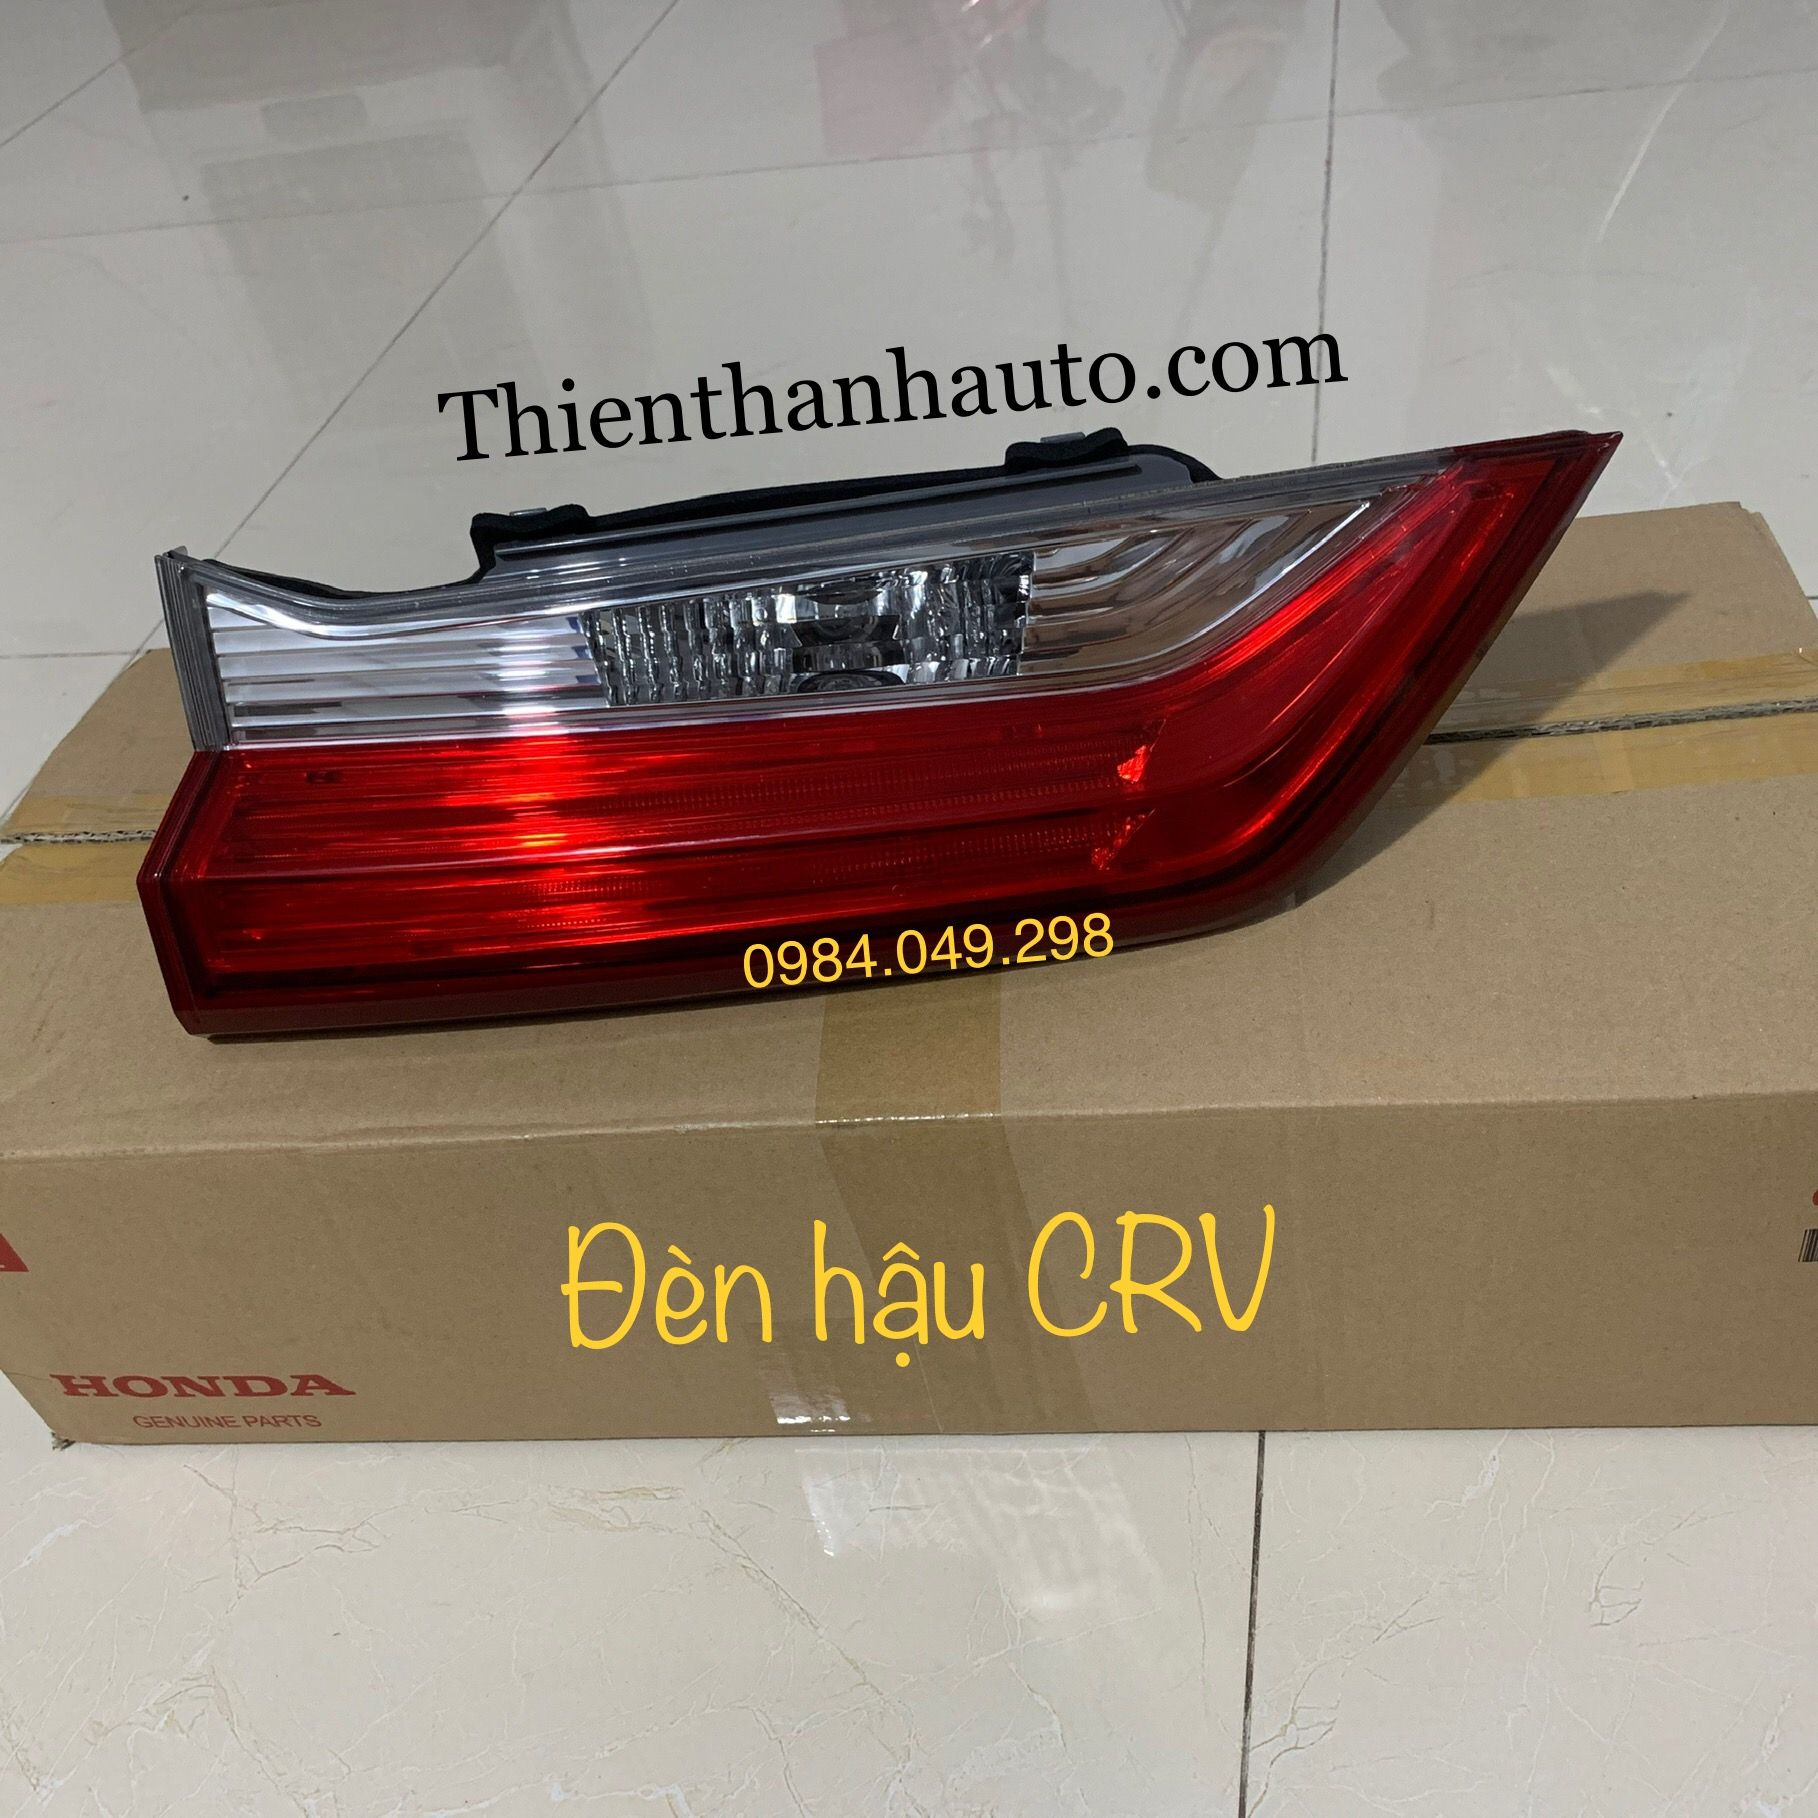 Đèn hậu trong Honda CRV chính hãng đời 2017-2018-2019 bên lái - Thienthanhauto.com